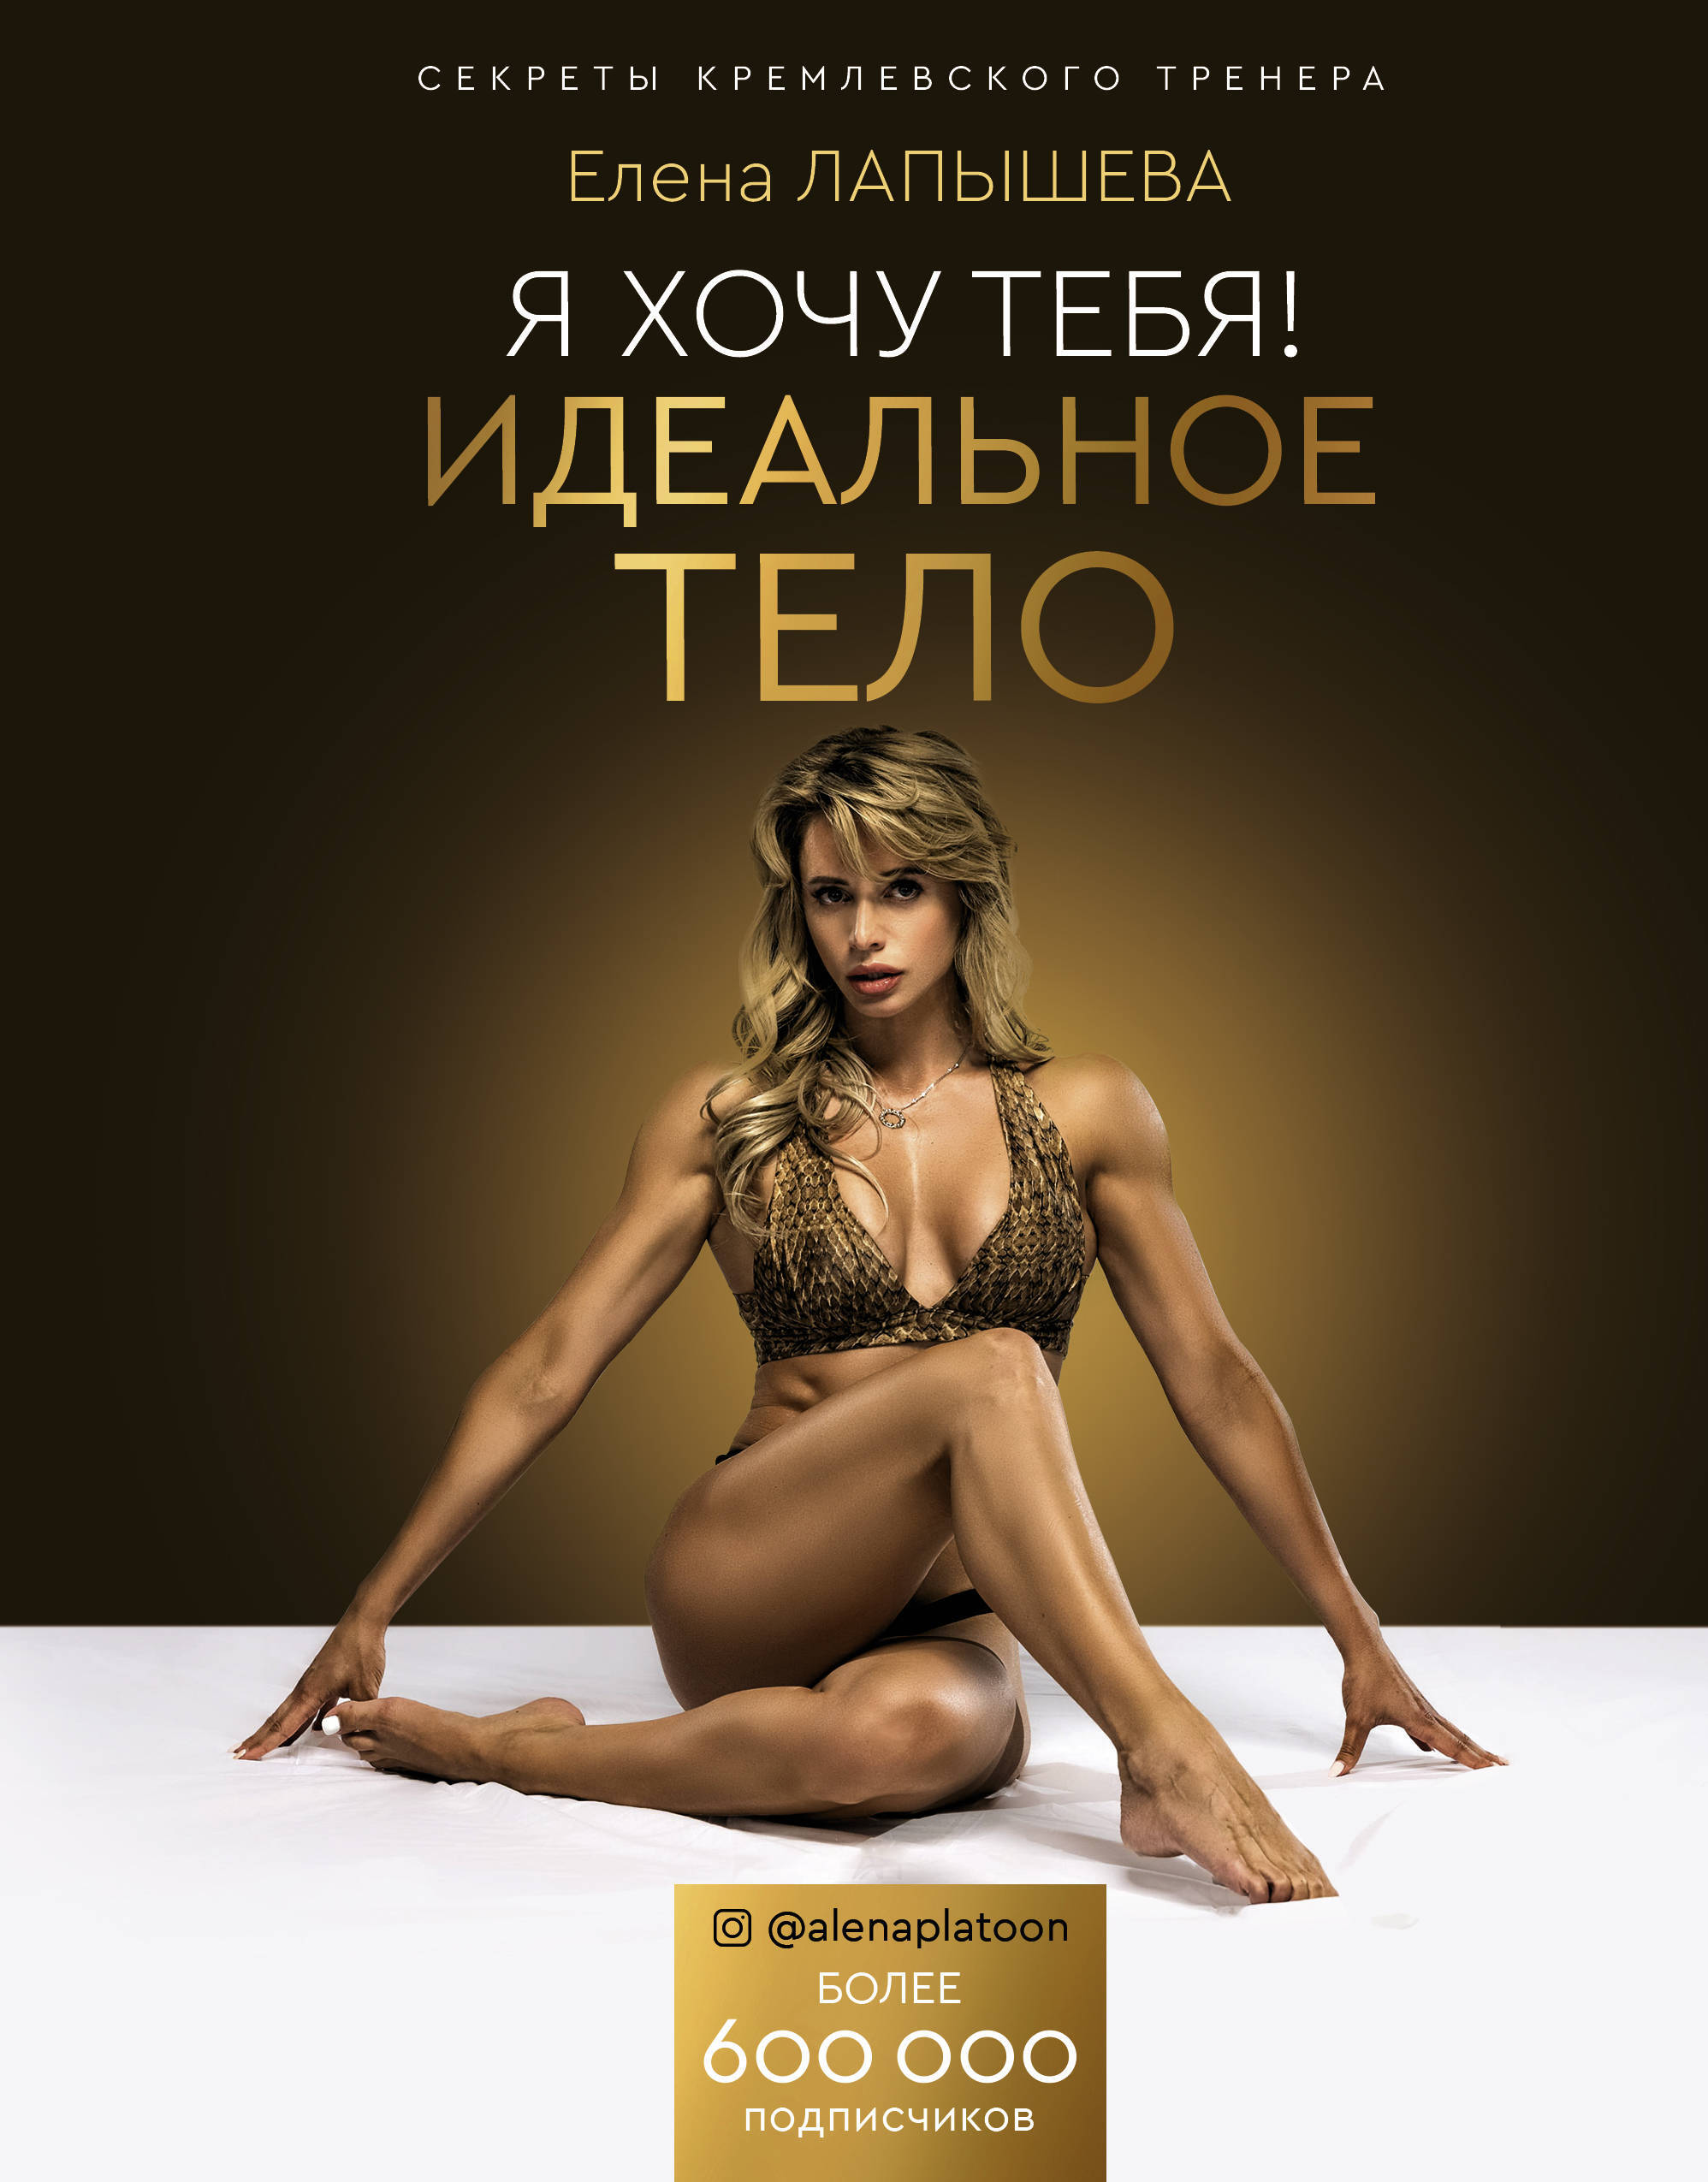 Секс идеальное тело - смотреть русское порно видео онлайн